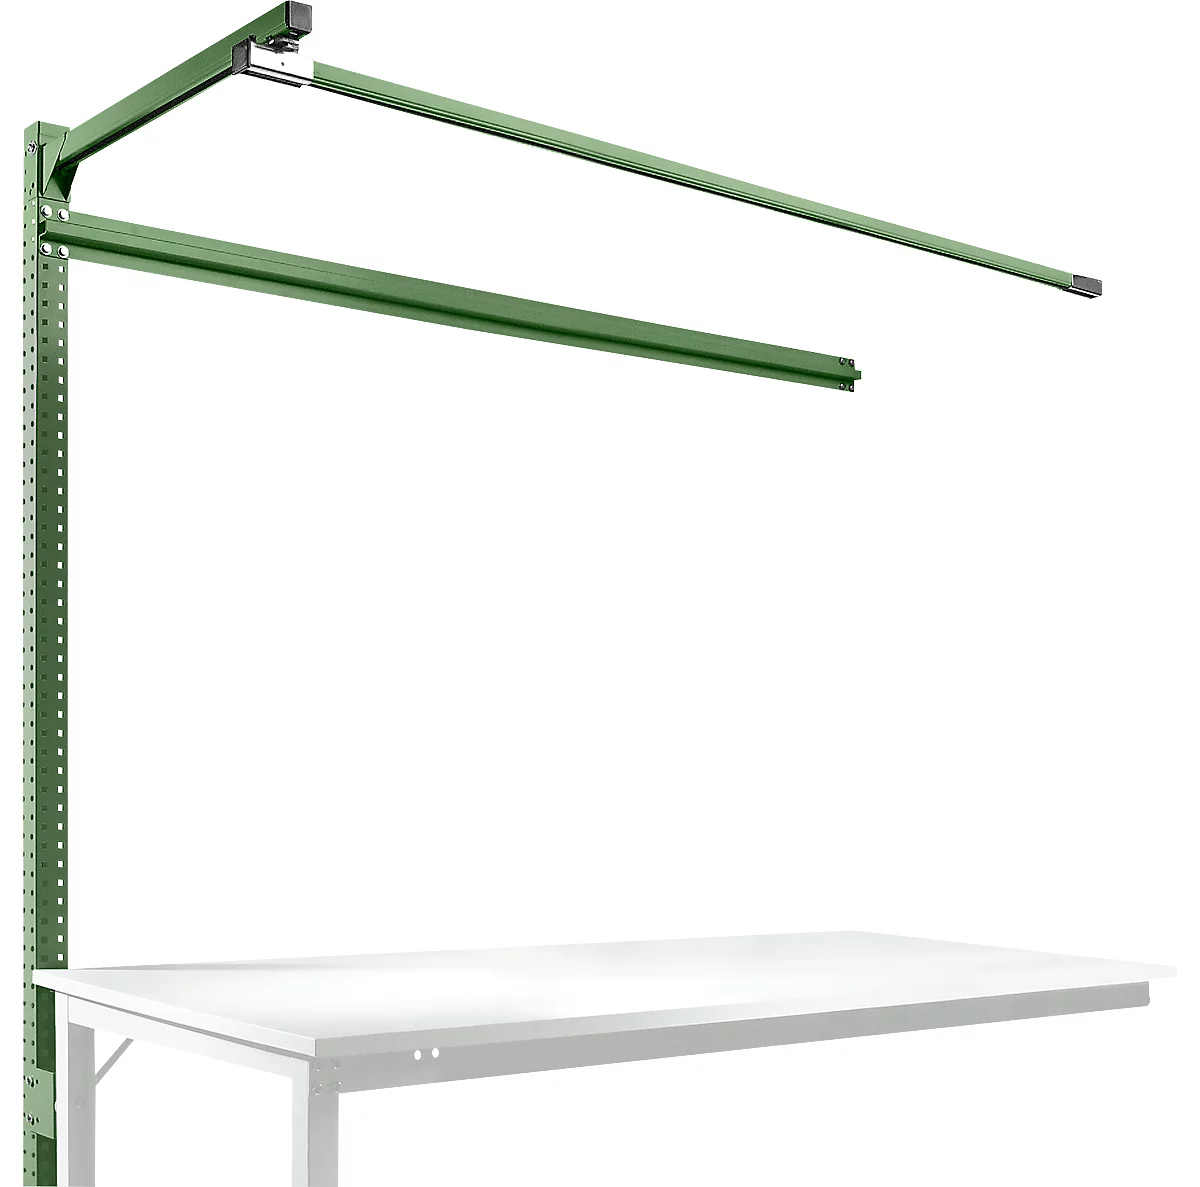 Estructura pórtica adicional con brazo saliente, Mesa de extensión STANDARD mesa de trabajo/banco de trabajo UNIVERSAL/PROFI, 1750 mm, verde reseda